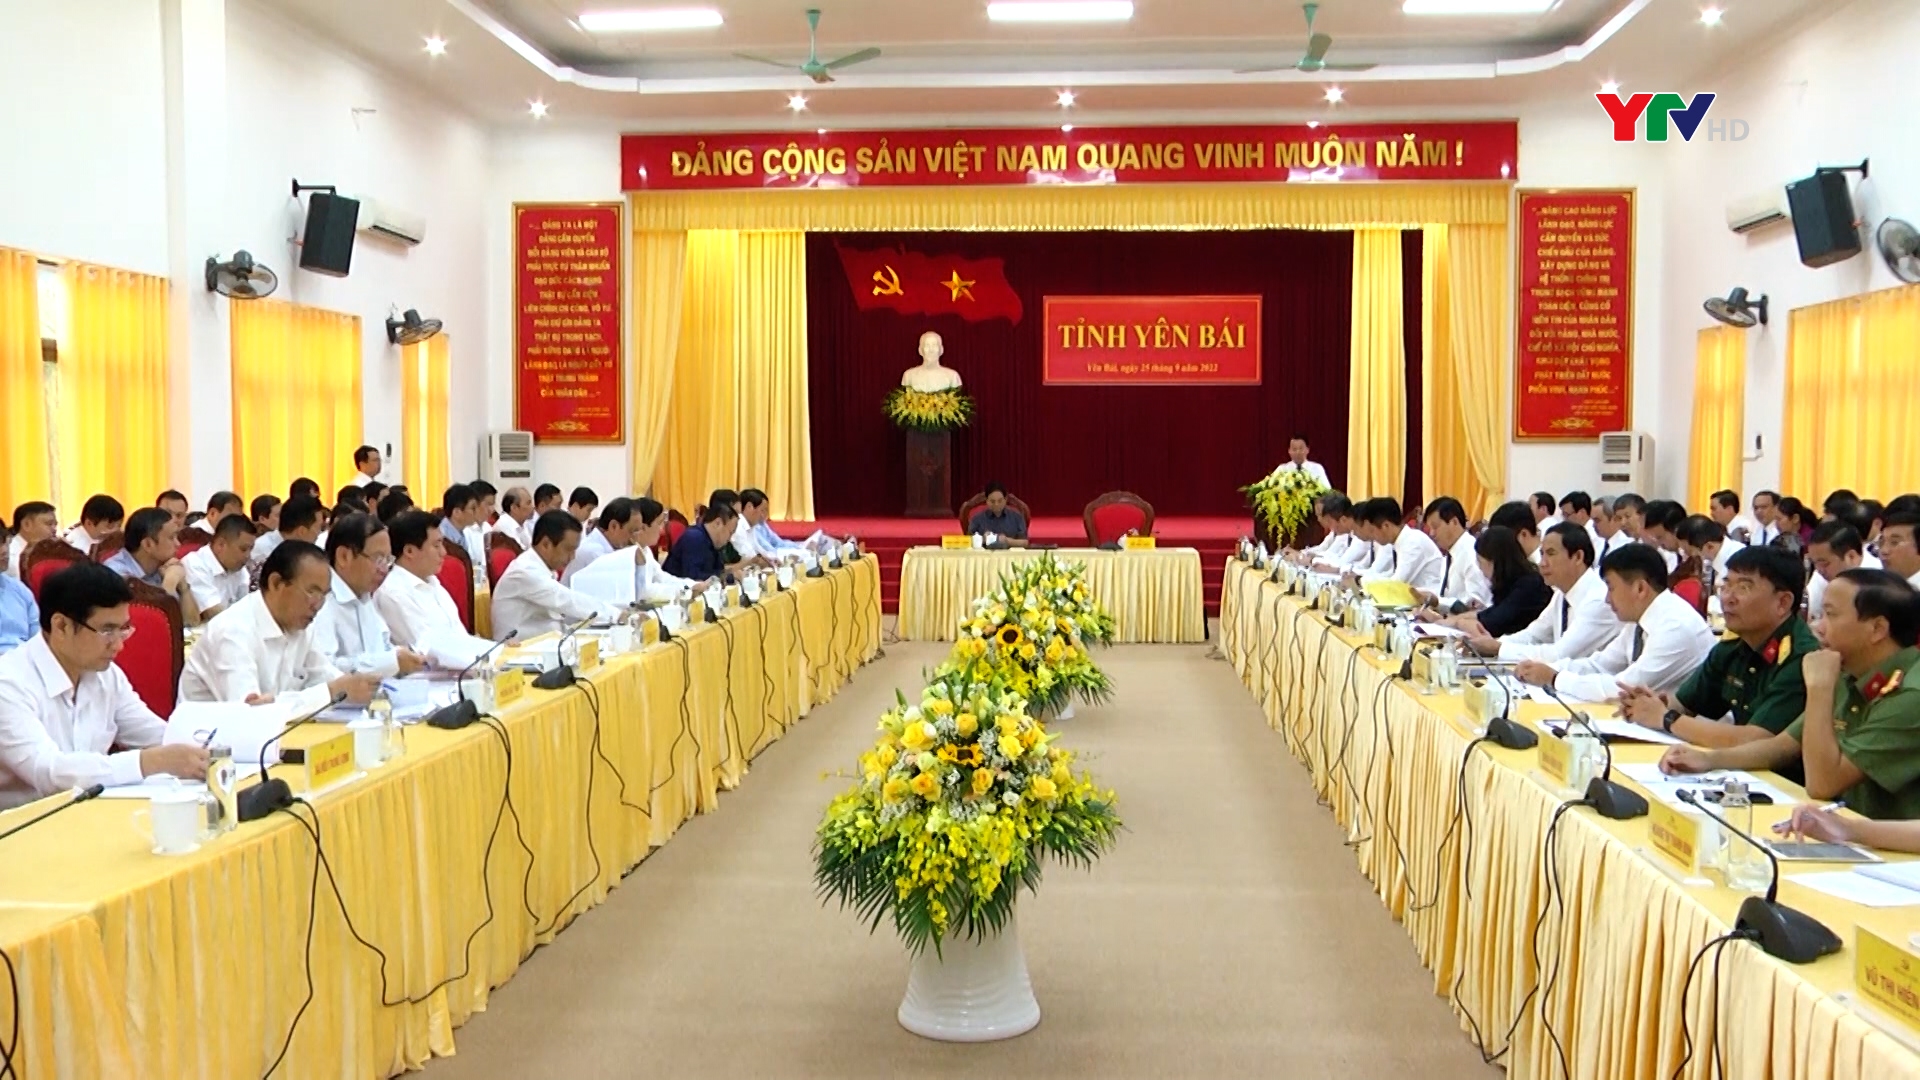 Thủ tướng Chính phủ Phạm Minh Chính làm việc với Ban Chấp hành Đảng bộ tỉnh Yên Bái (Mở rộng)